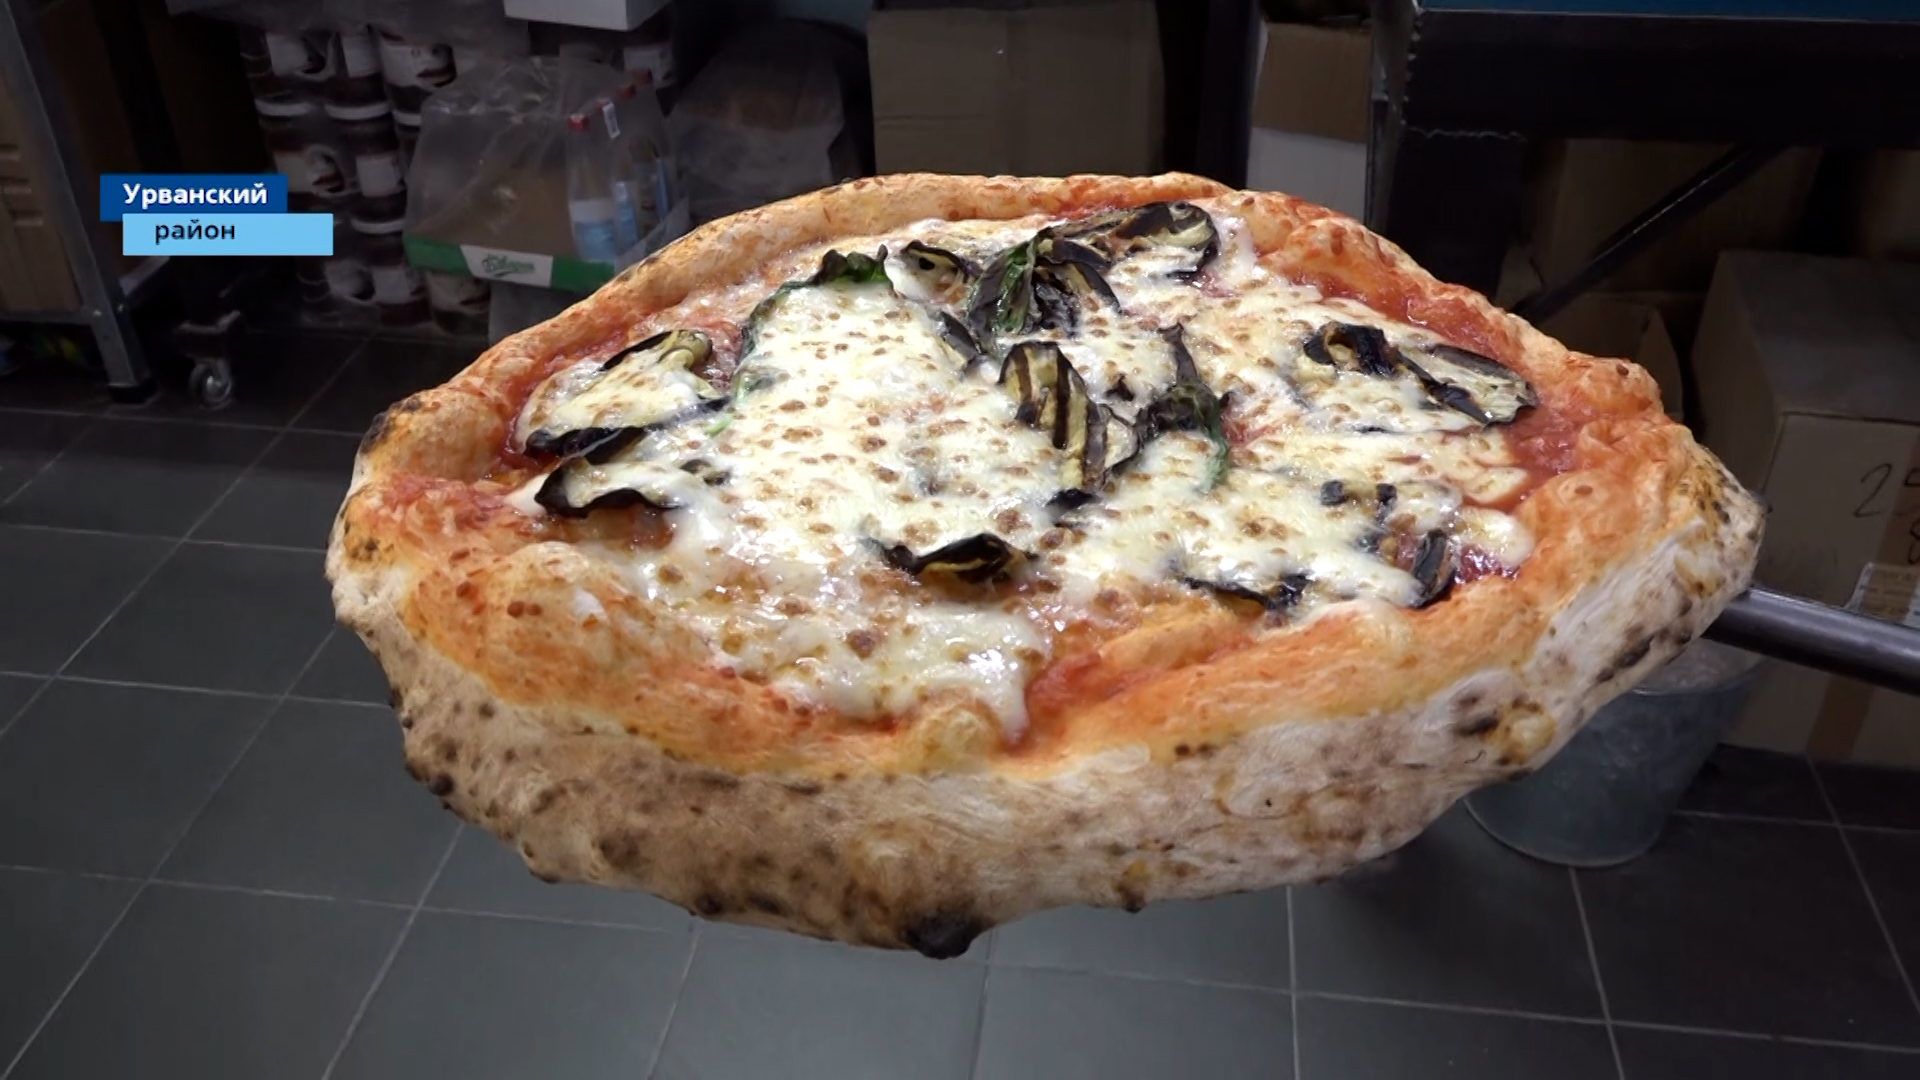 В приготовлении настоящей итальянской пиццы есть особые секреты и технологии